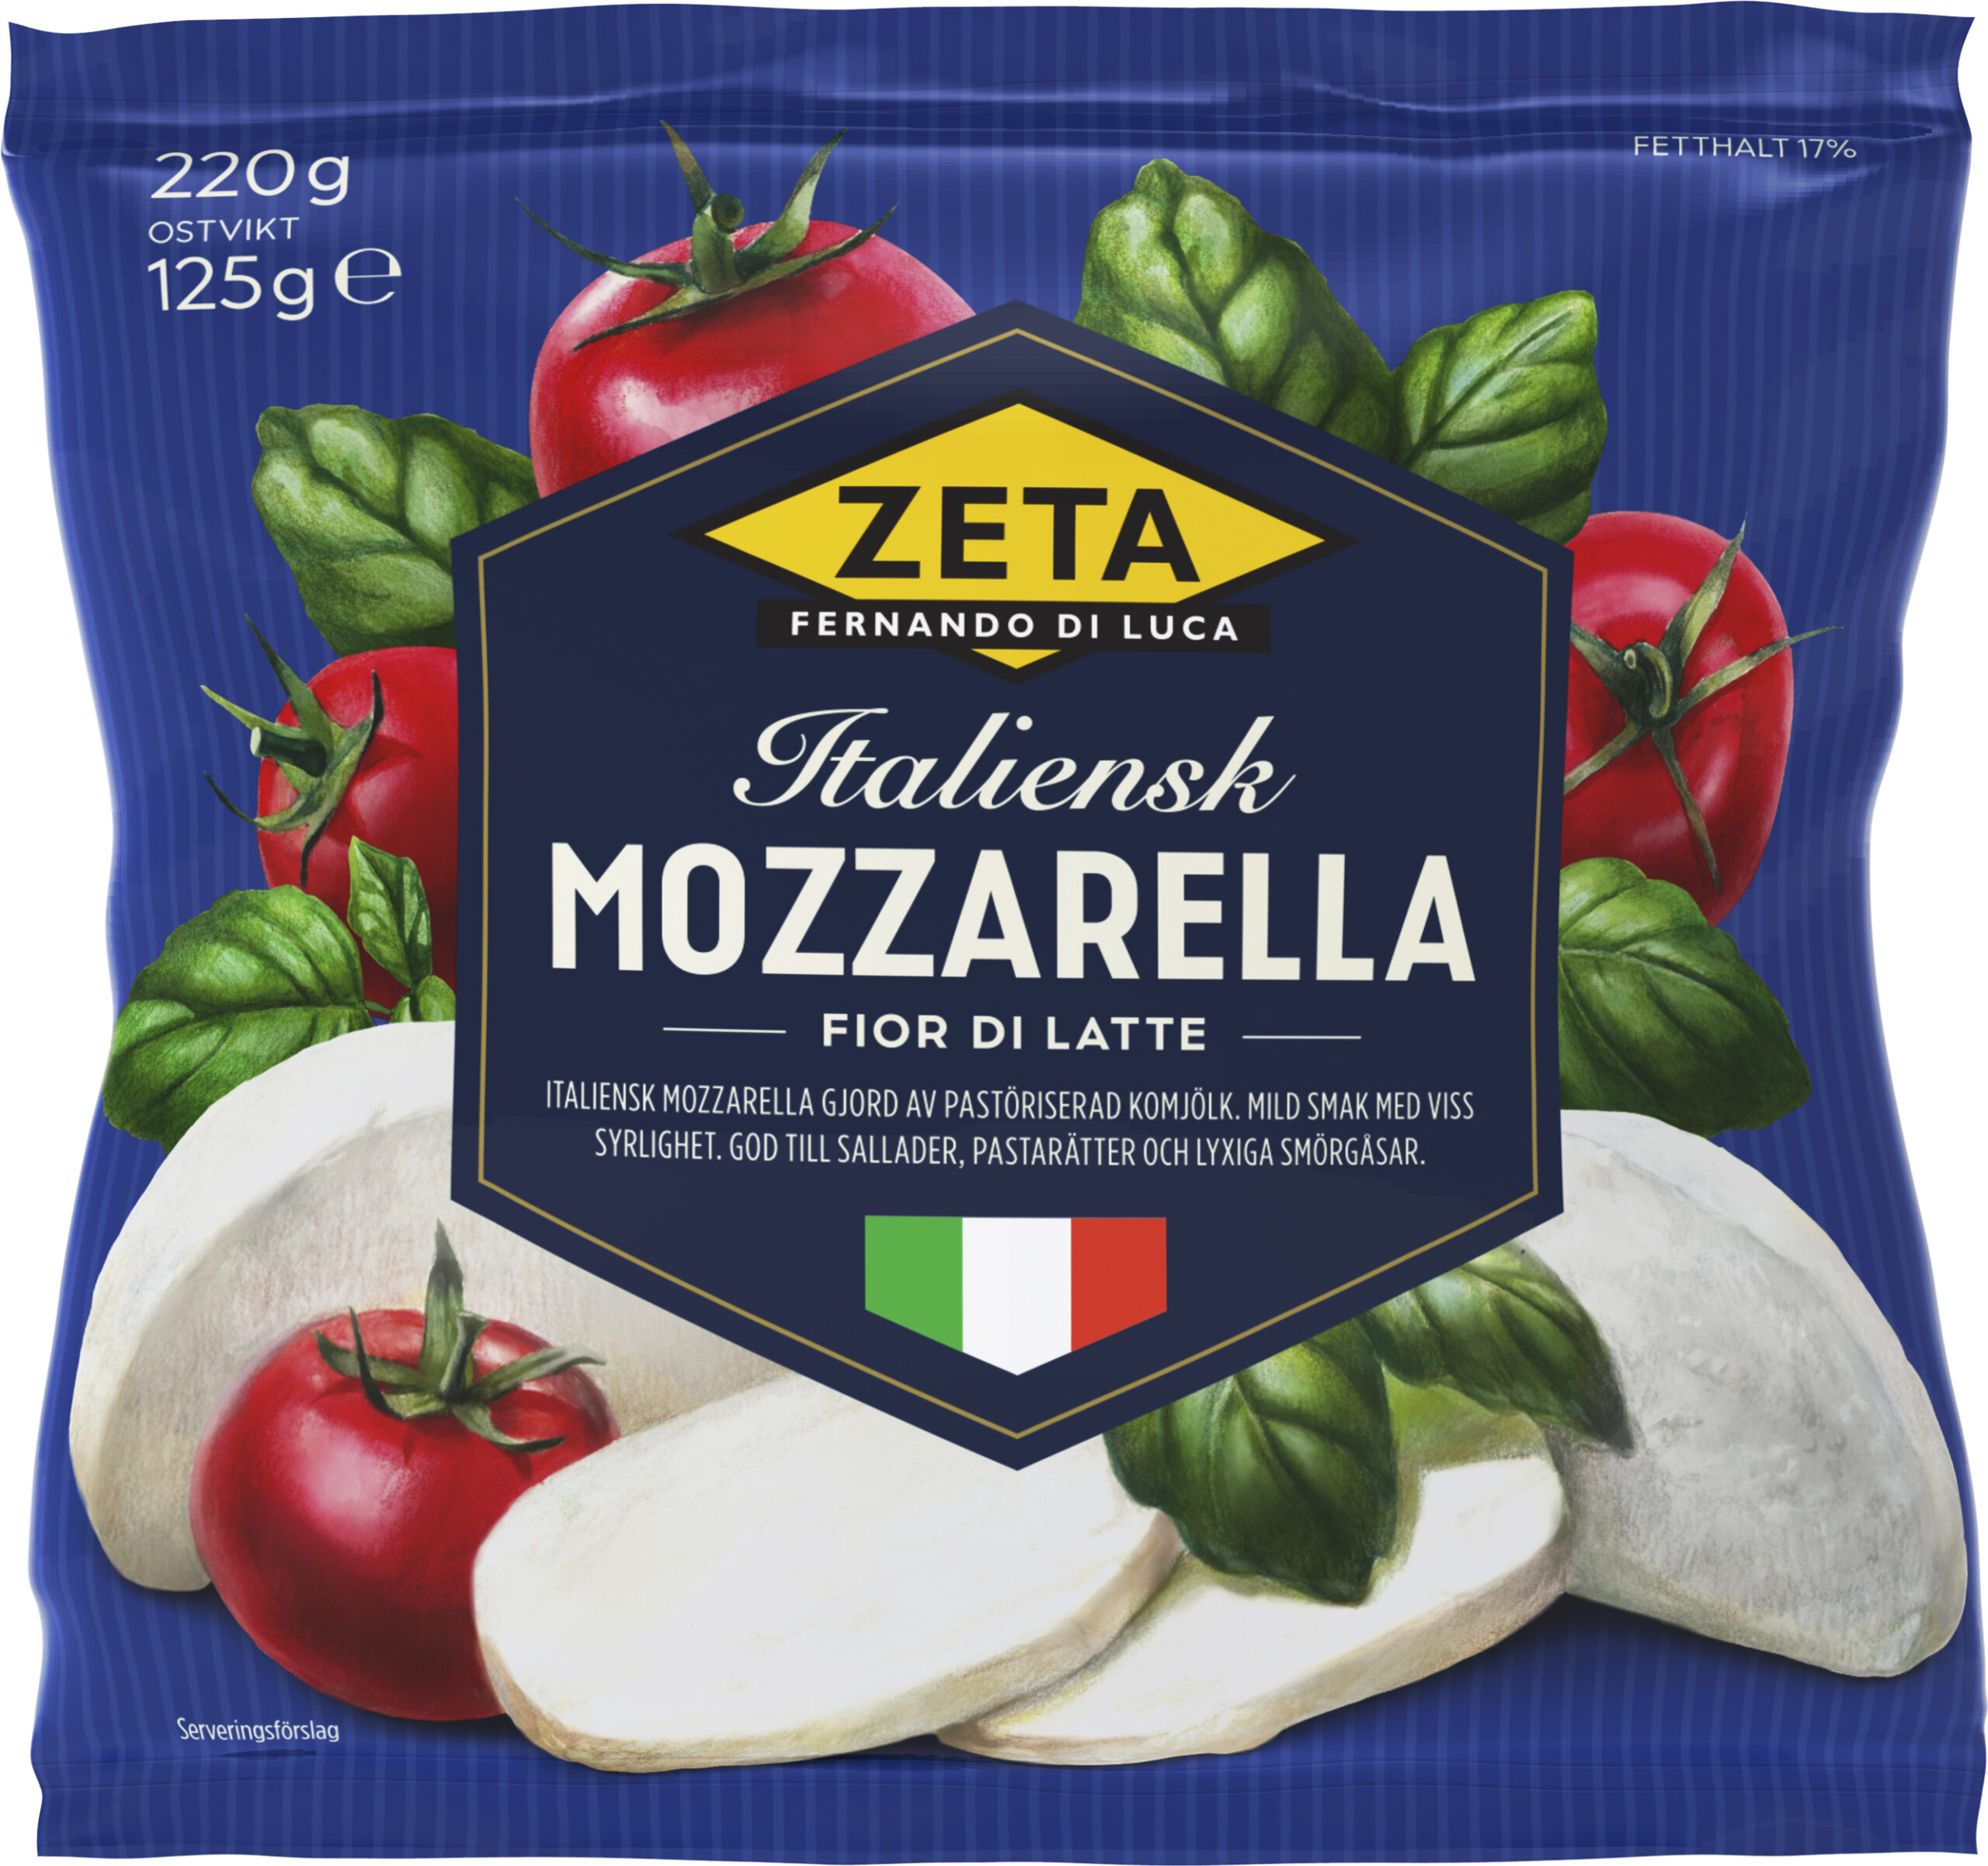 https://www.zeta.nu/app/uploads/2019/06/1567-Zeta-Mozzarella-125g-HR-scaled.jpg